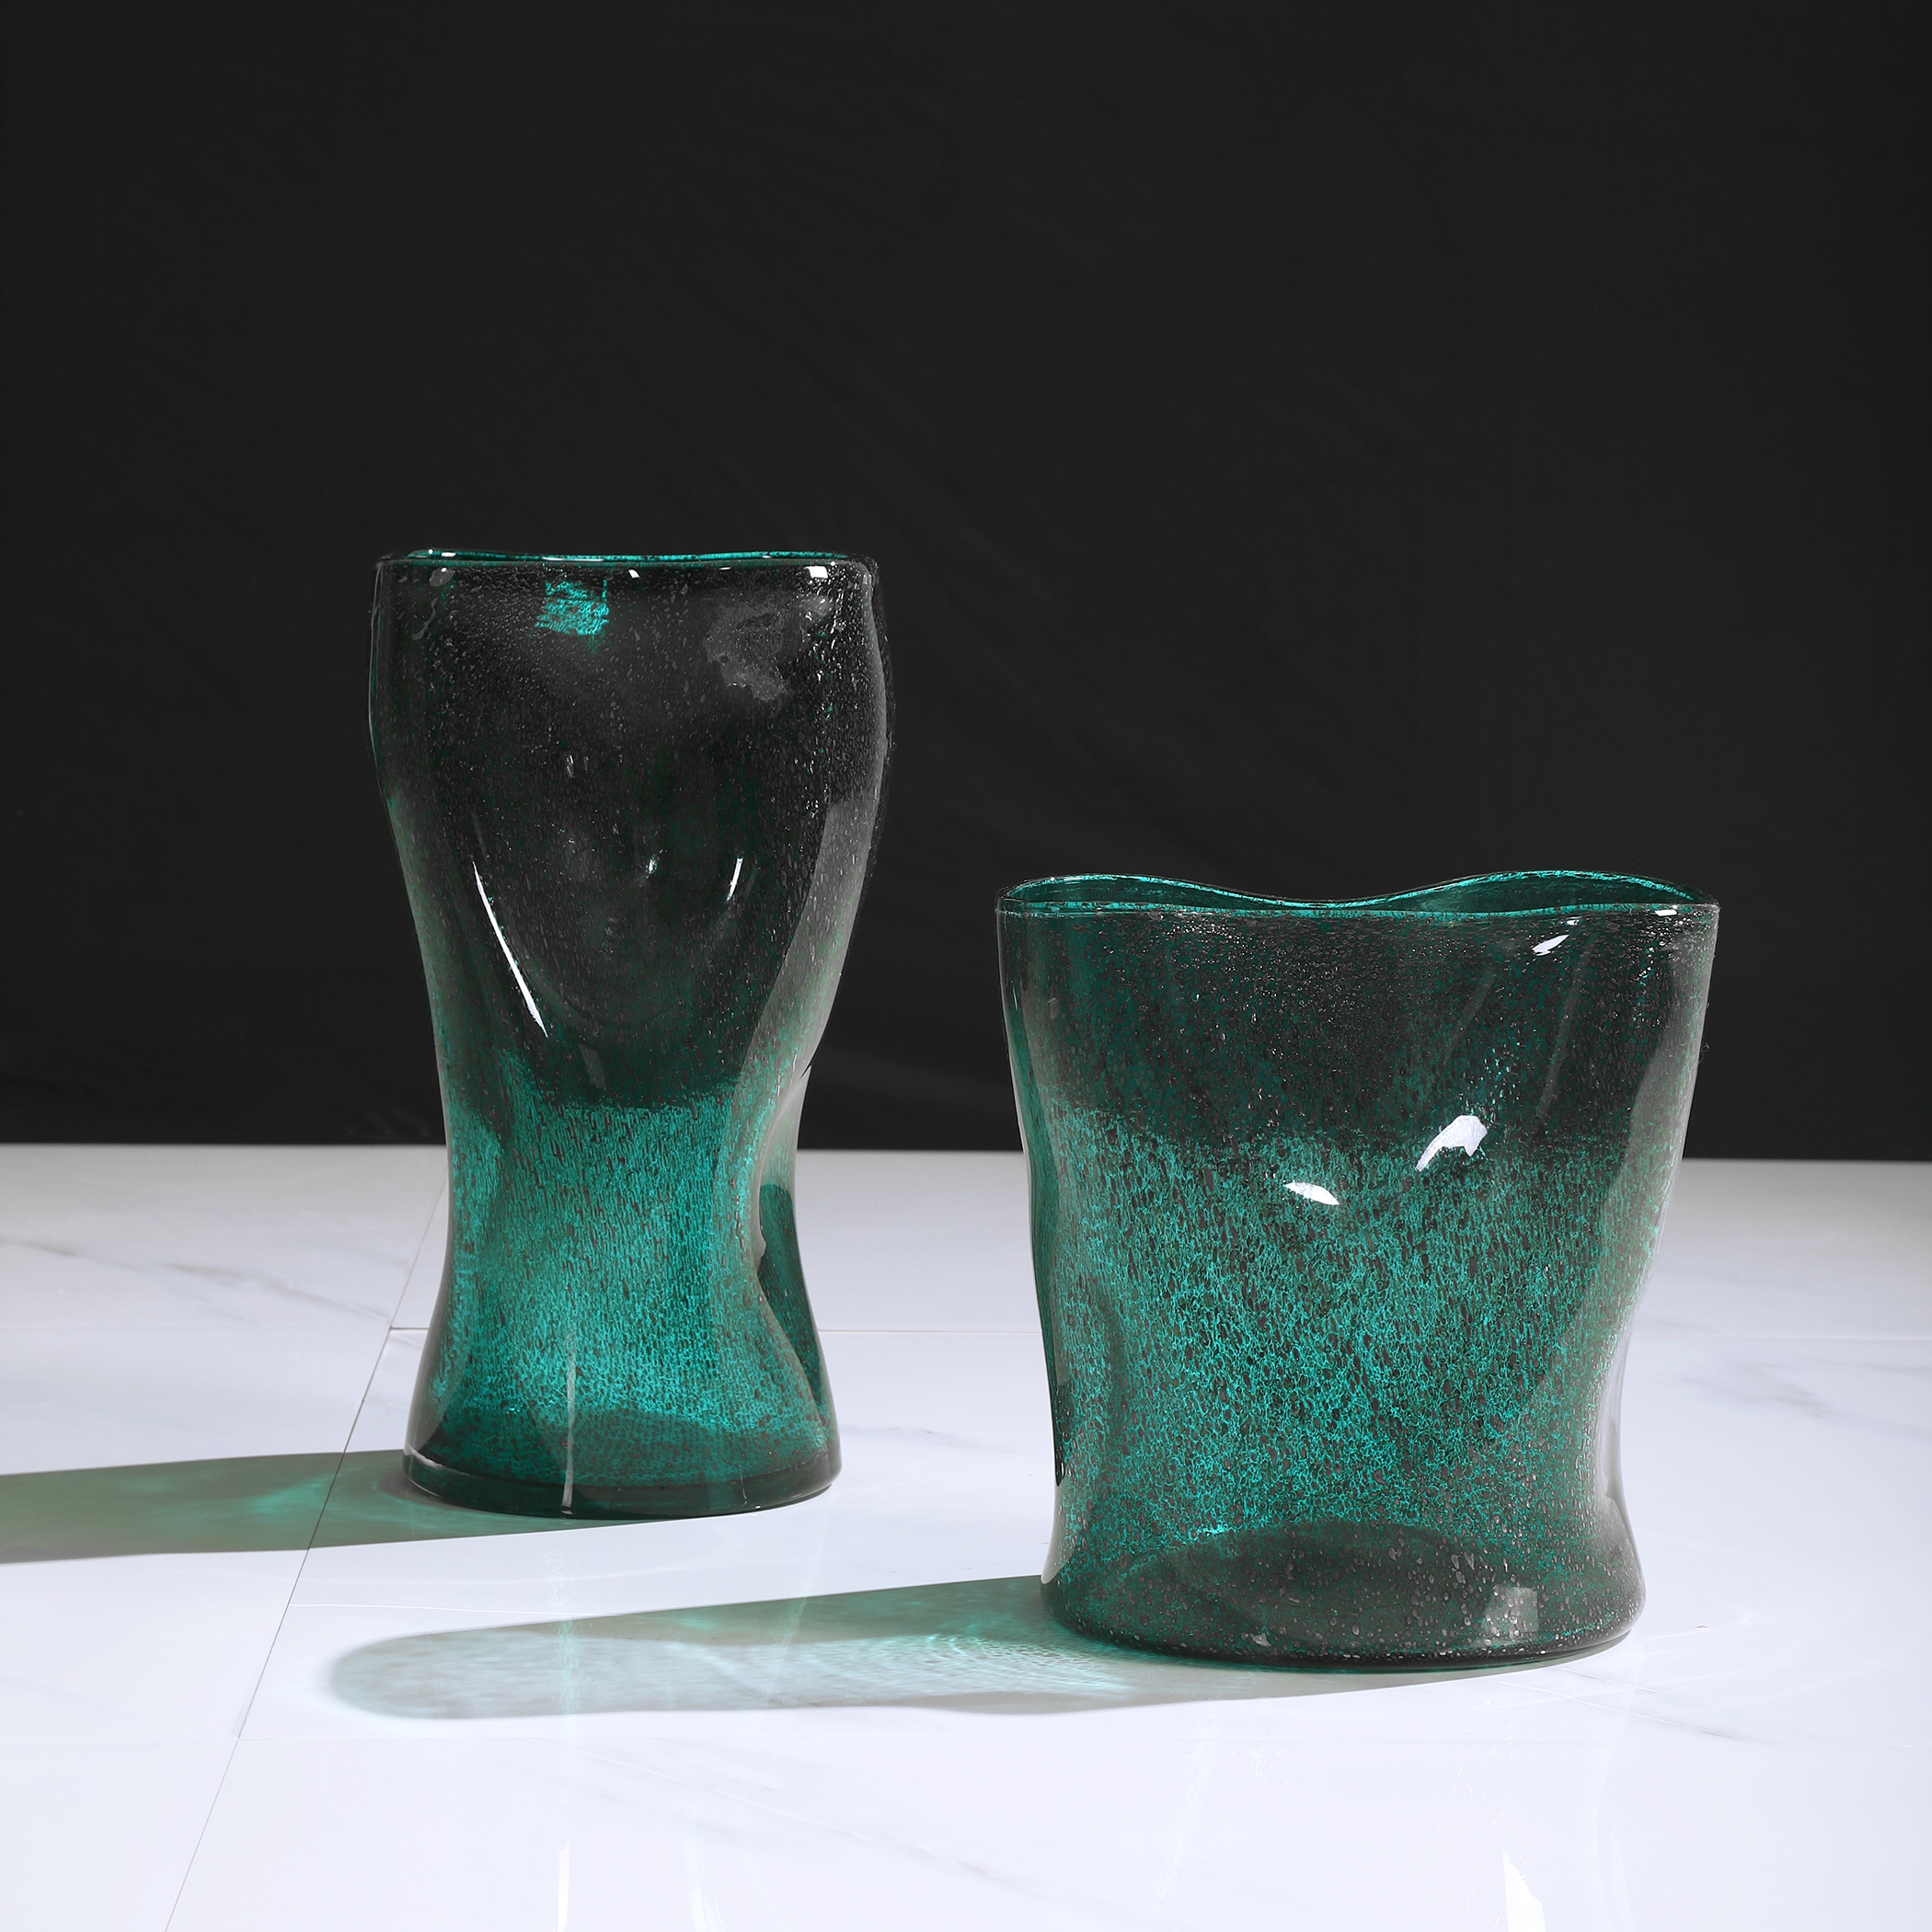 Lulu Aqua Glass Vases, S/2 - Image 1